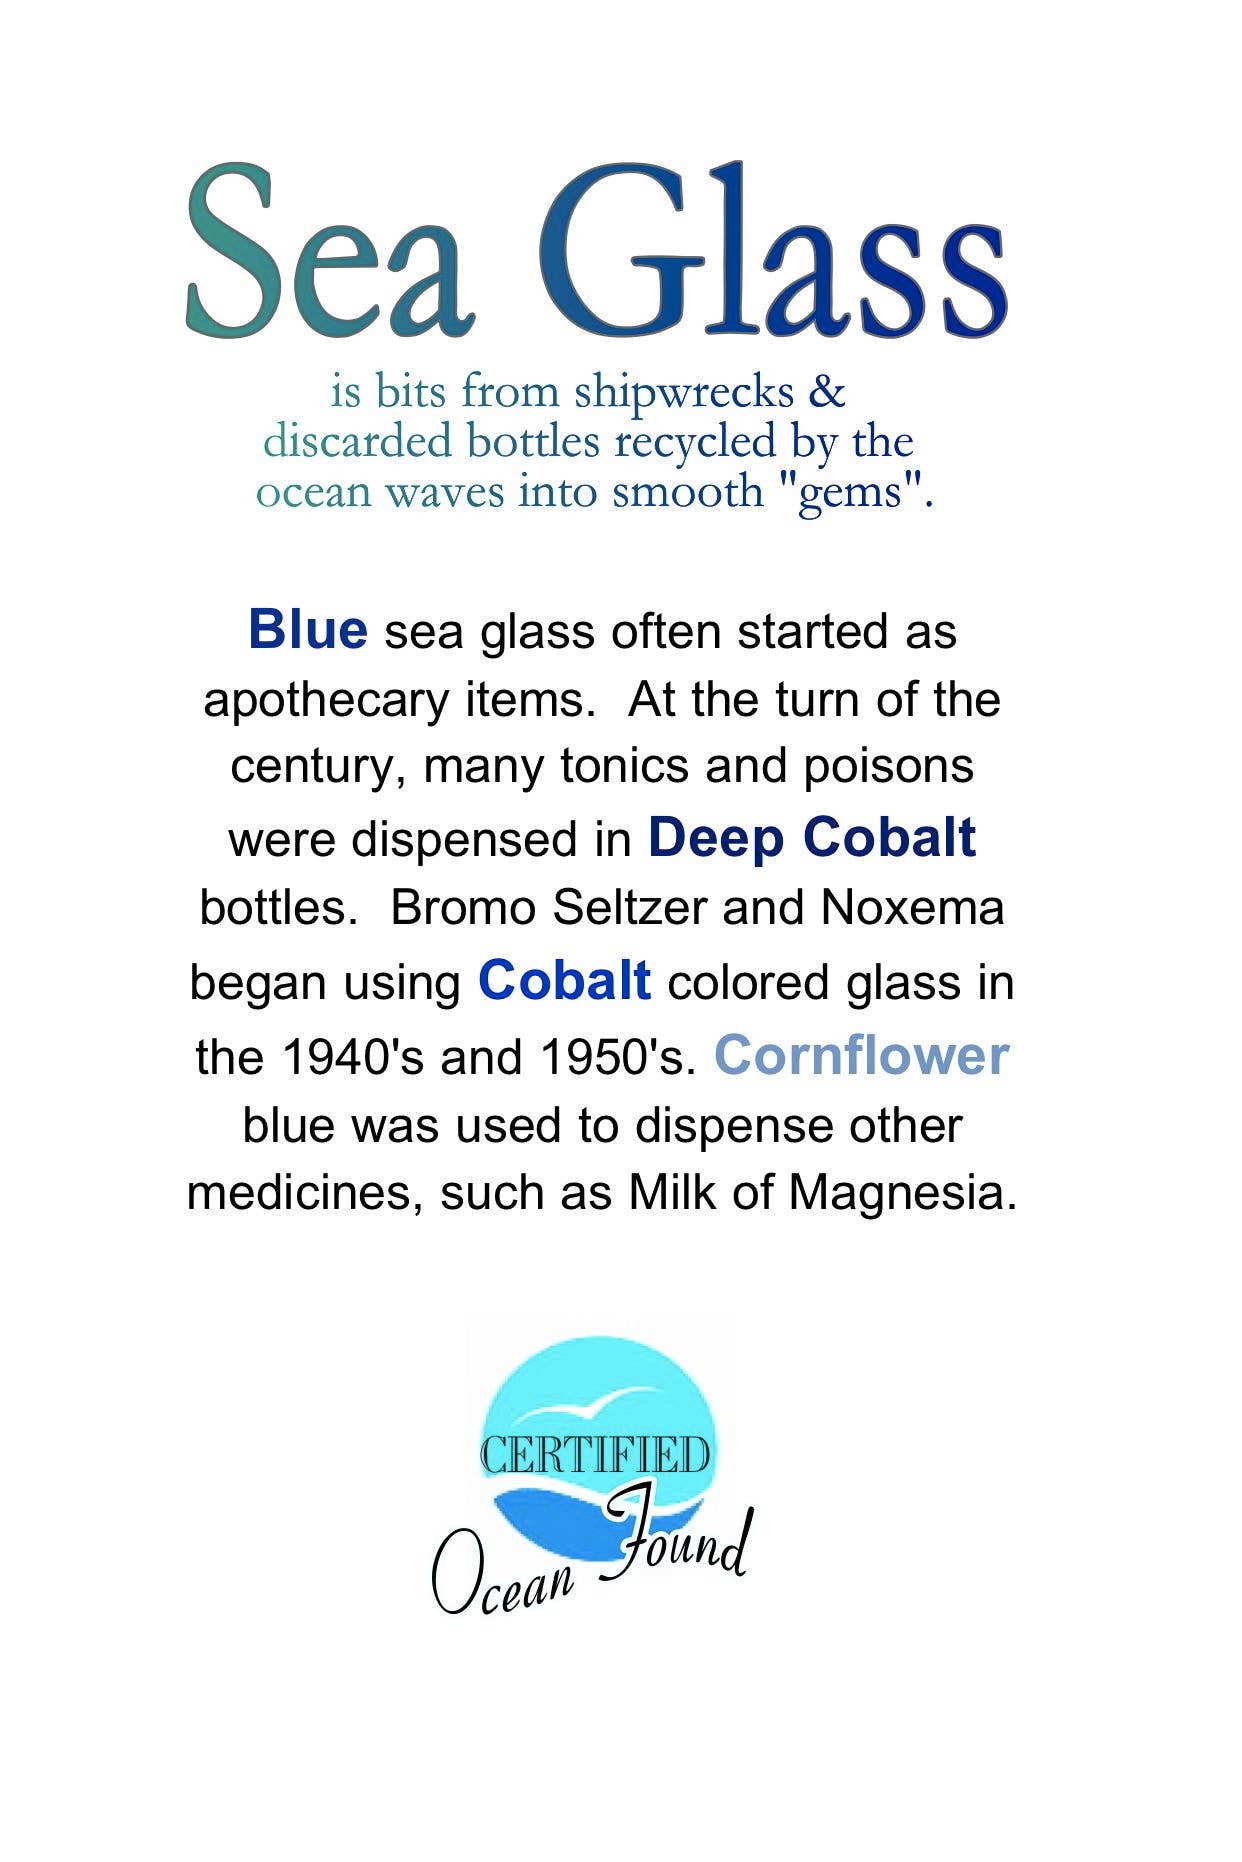 sea glass description